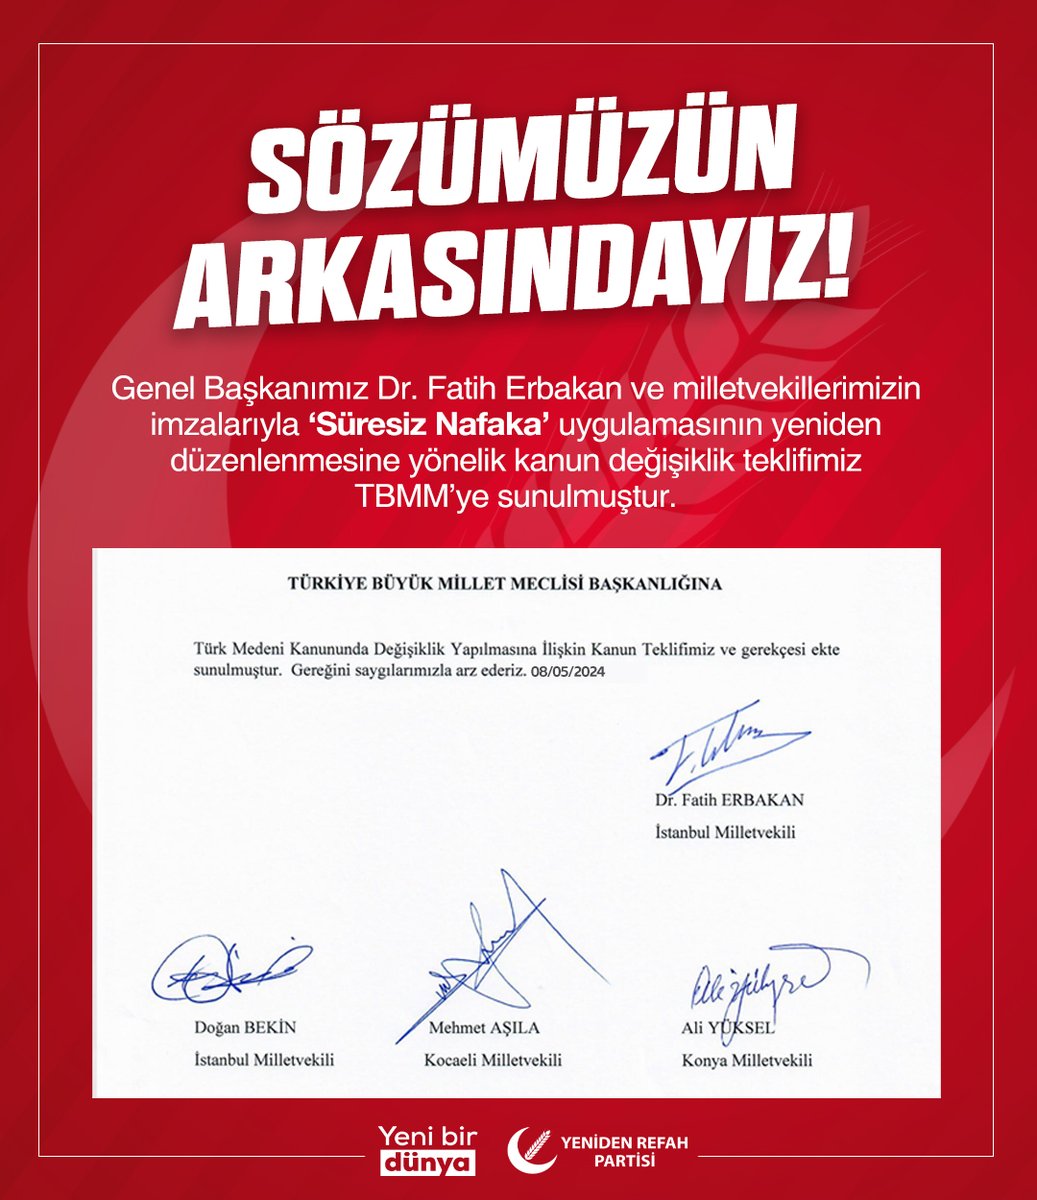 Sözümüzün Arkasındayız! Genel Başkanımız Dr. Fatih Erbakan ve milletvekillerimizin imzalarıyla ‘Süresiz Nafaka’ uygulamasının yeniden düzenlenmesine yönelik kanun değişiklik teklifimiz TBMM’ye sunulmuştur.